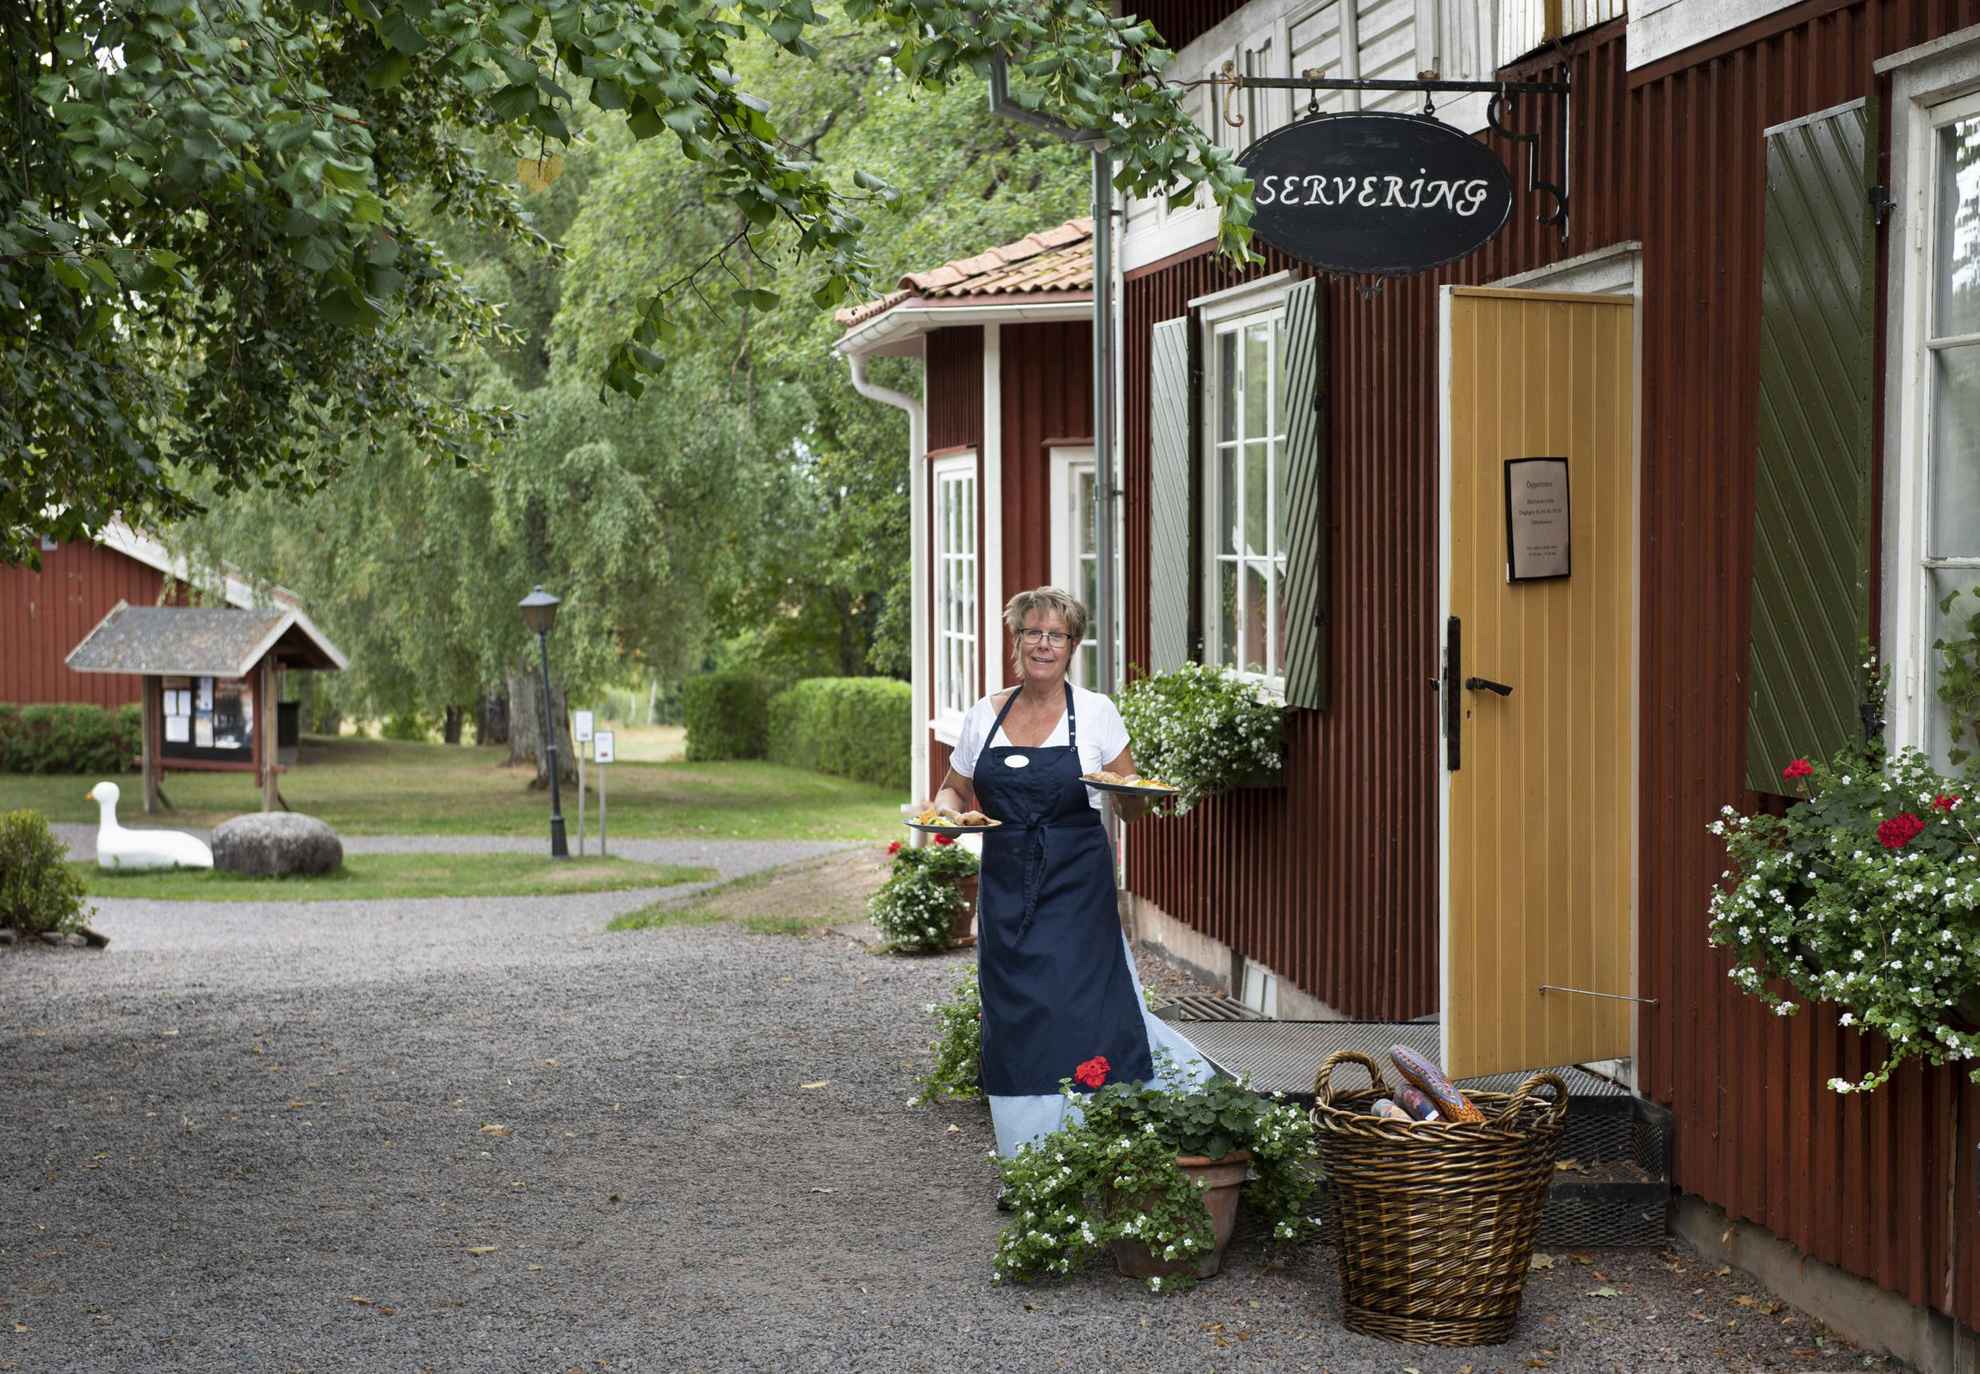 Mårbacka café in Värmland